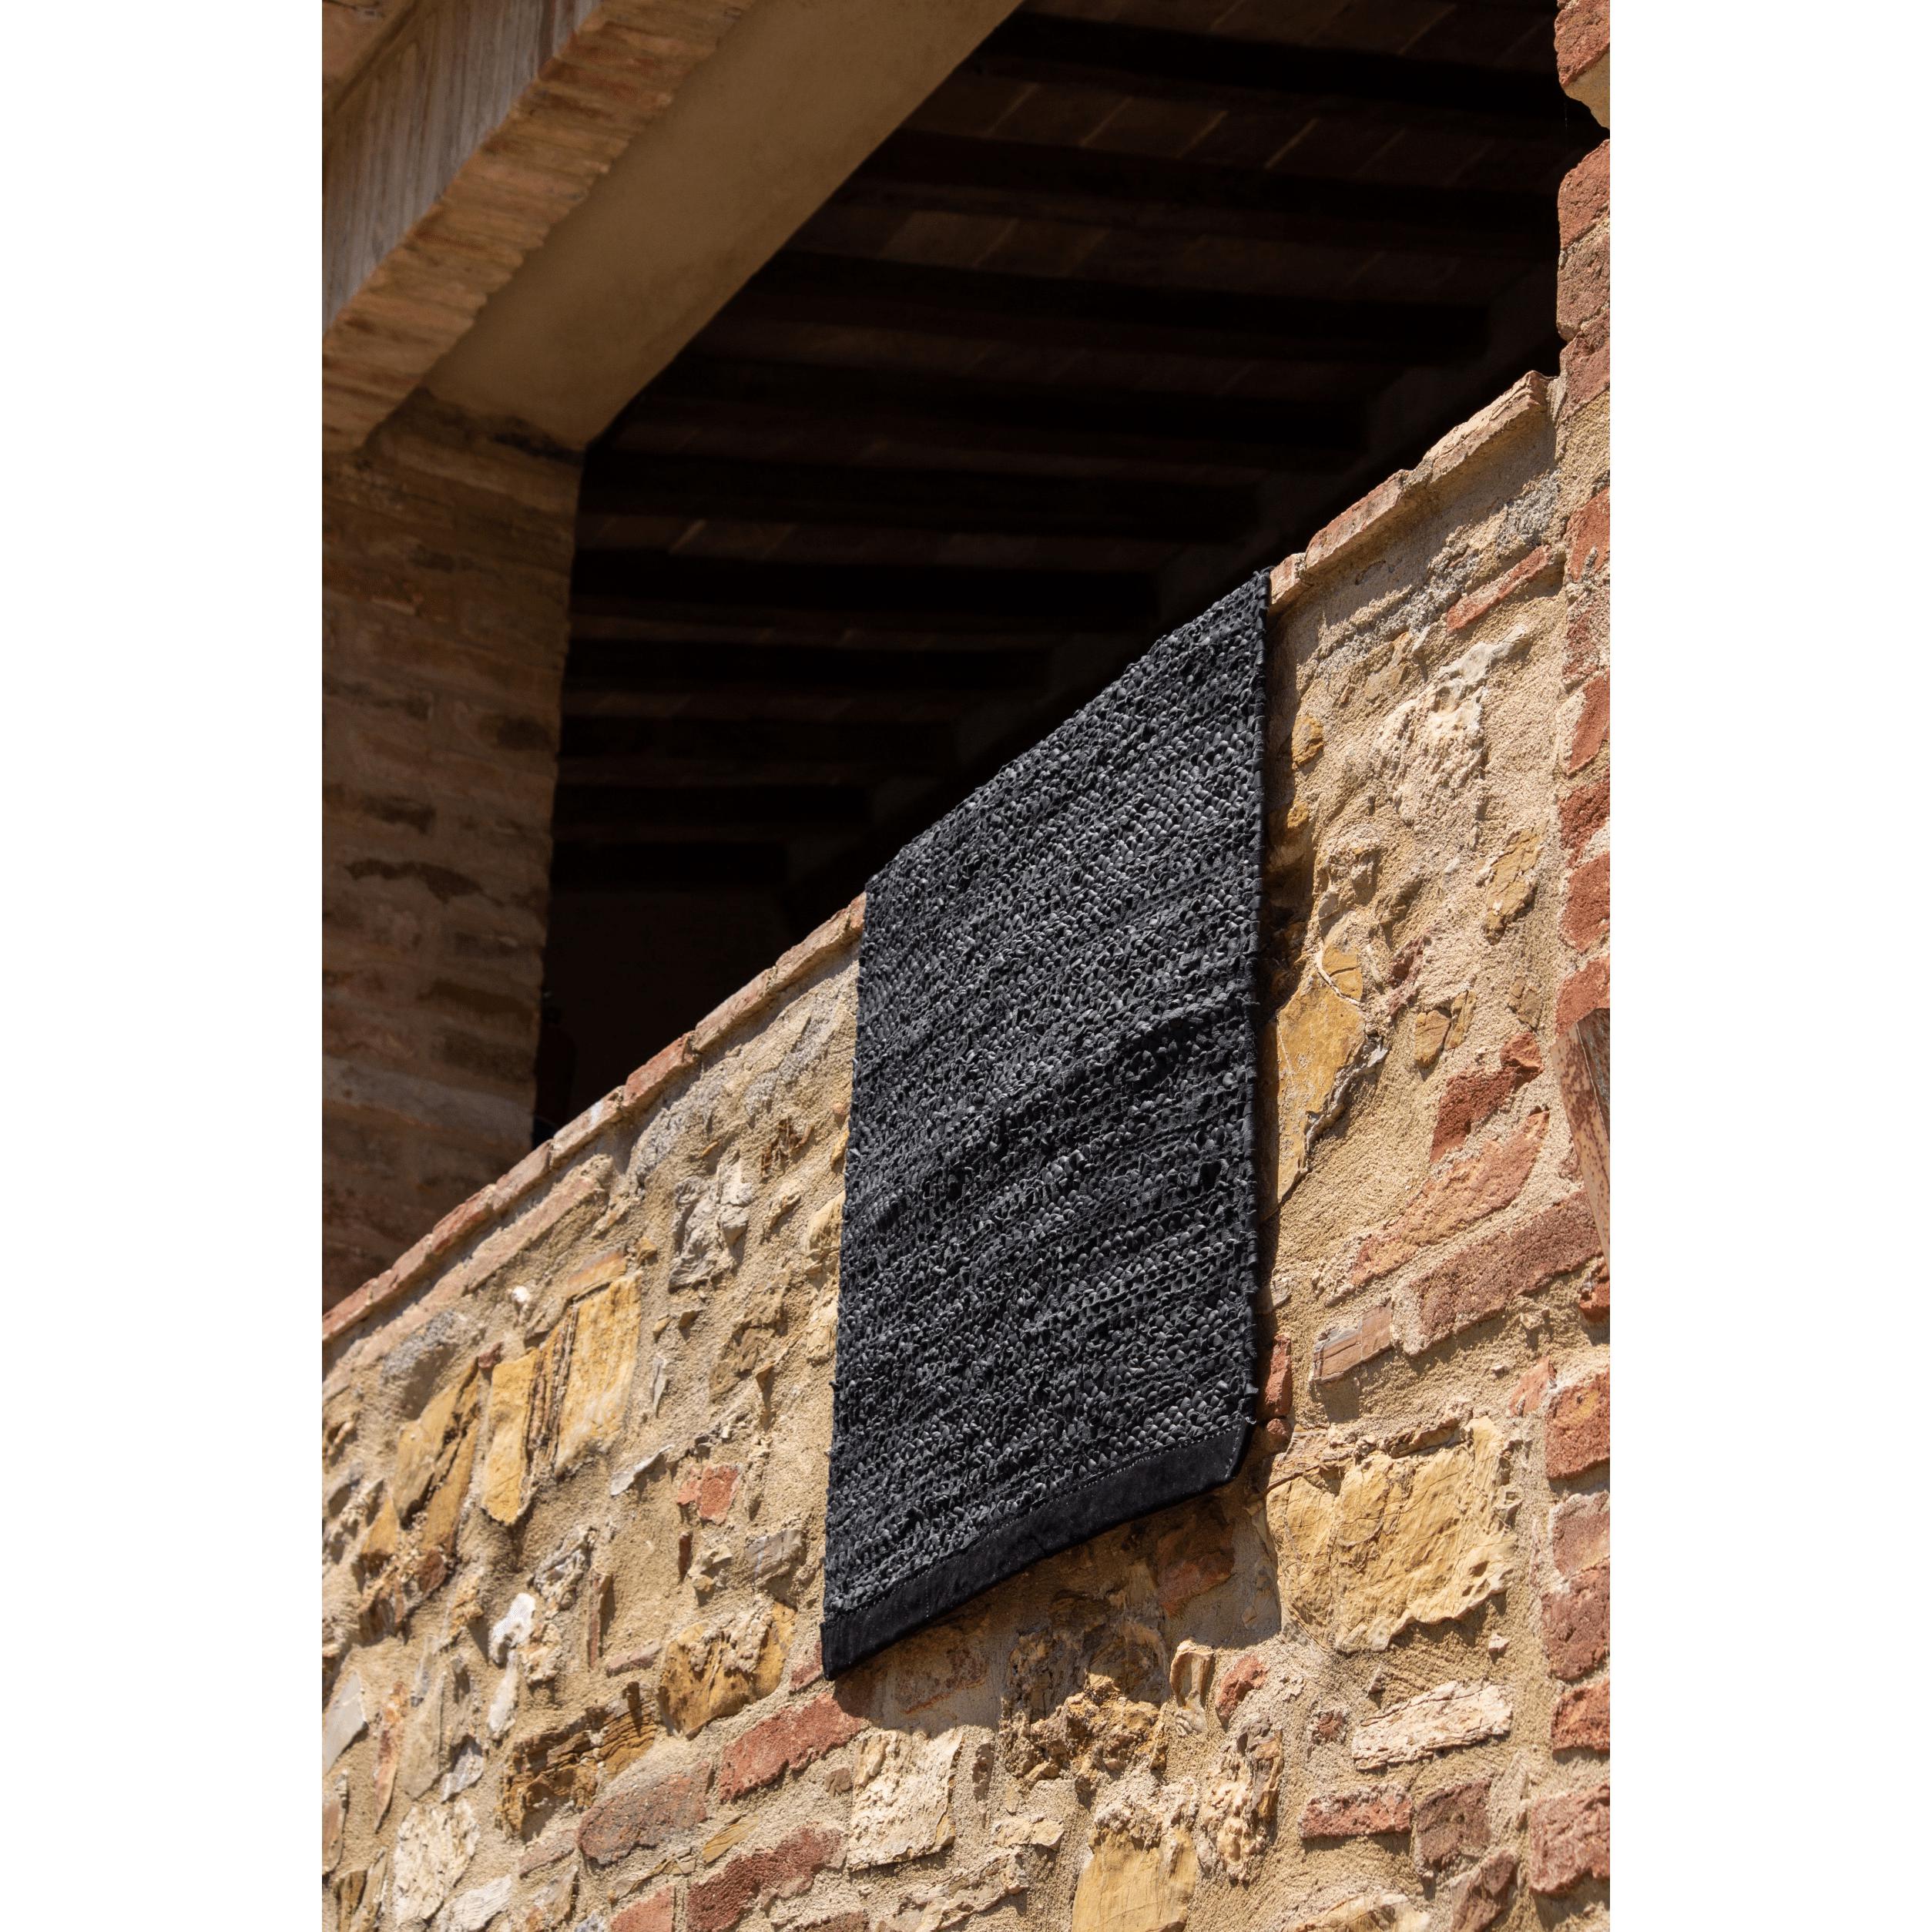 Rug Solid Tapis en cuir noir, 75 x 300 cm